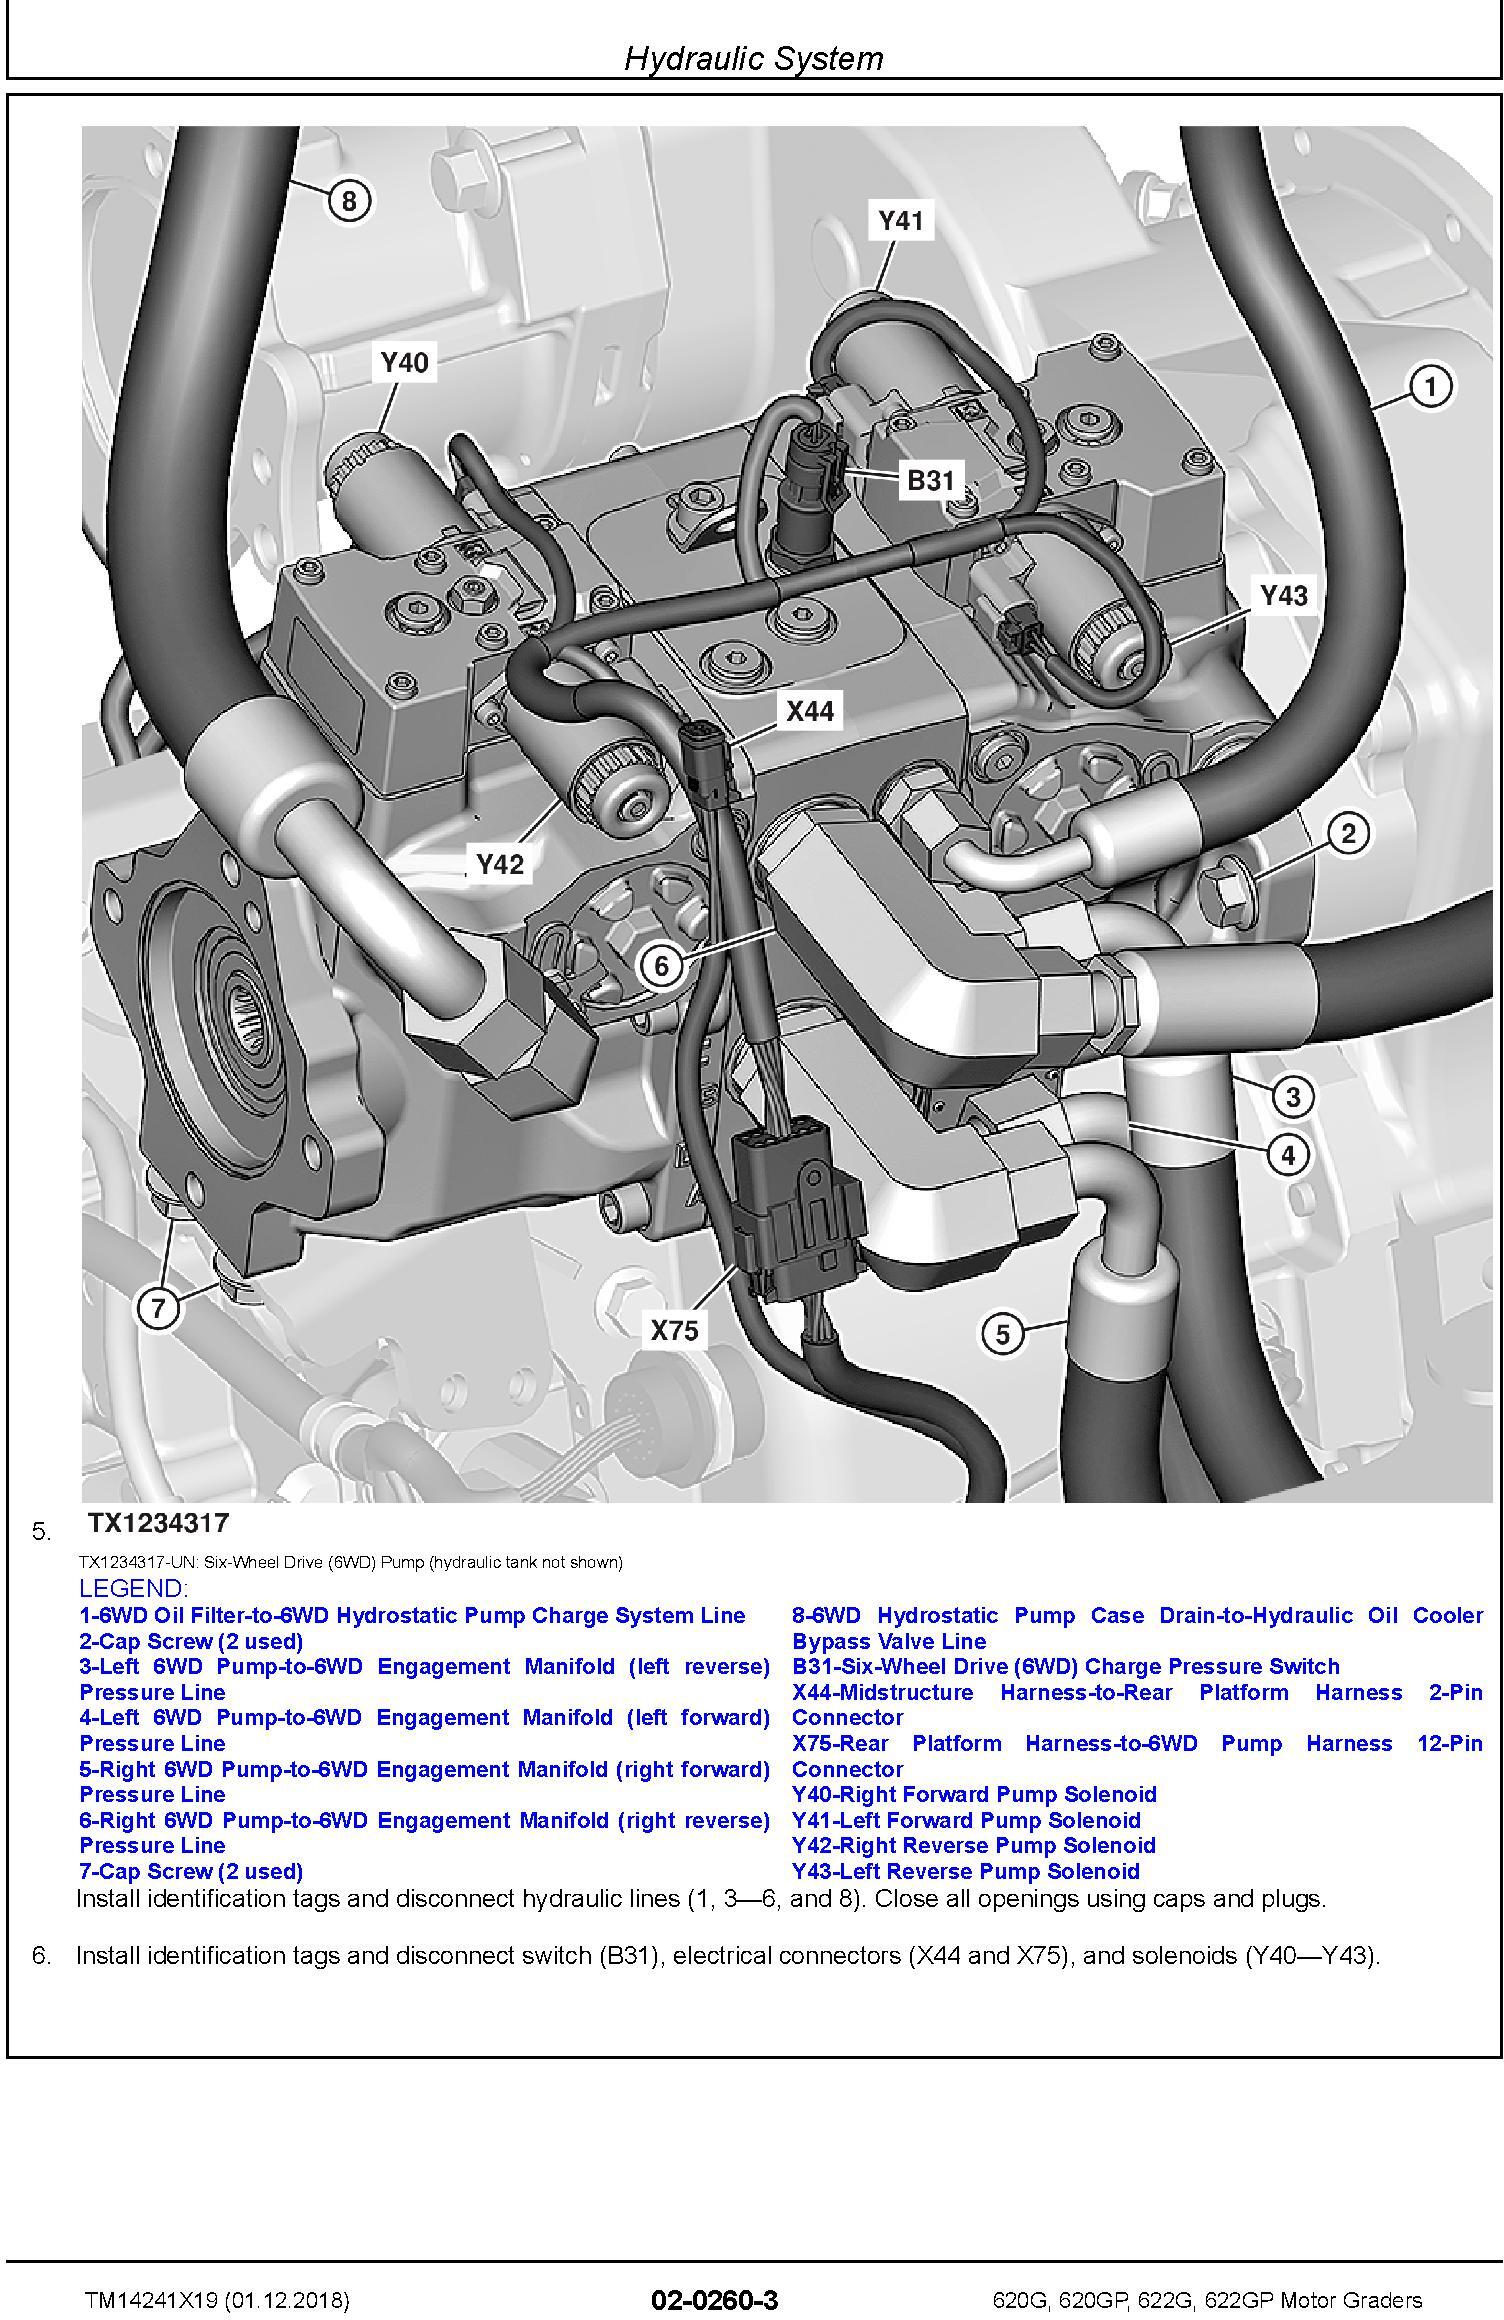 John Deere 620G, 620GP, 622G, 622GP (SN.F680878-,L700954-) Motor Graders Repair Manual (TM14241X19) - 3